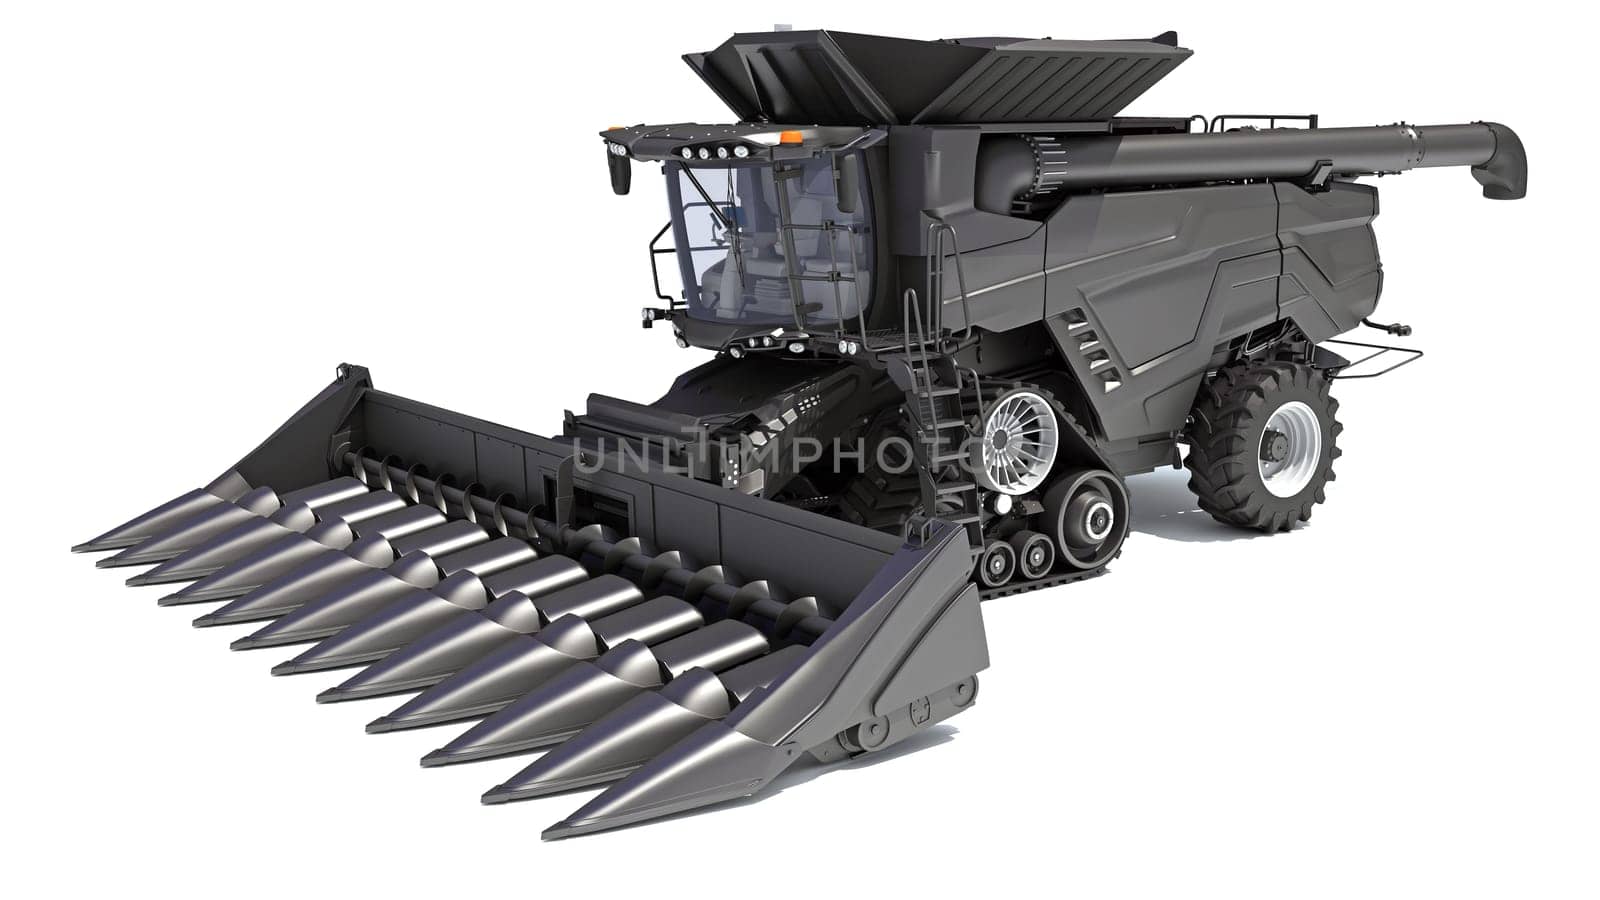 Combine Harvester farm equipment 3D rendering model on white background